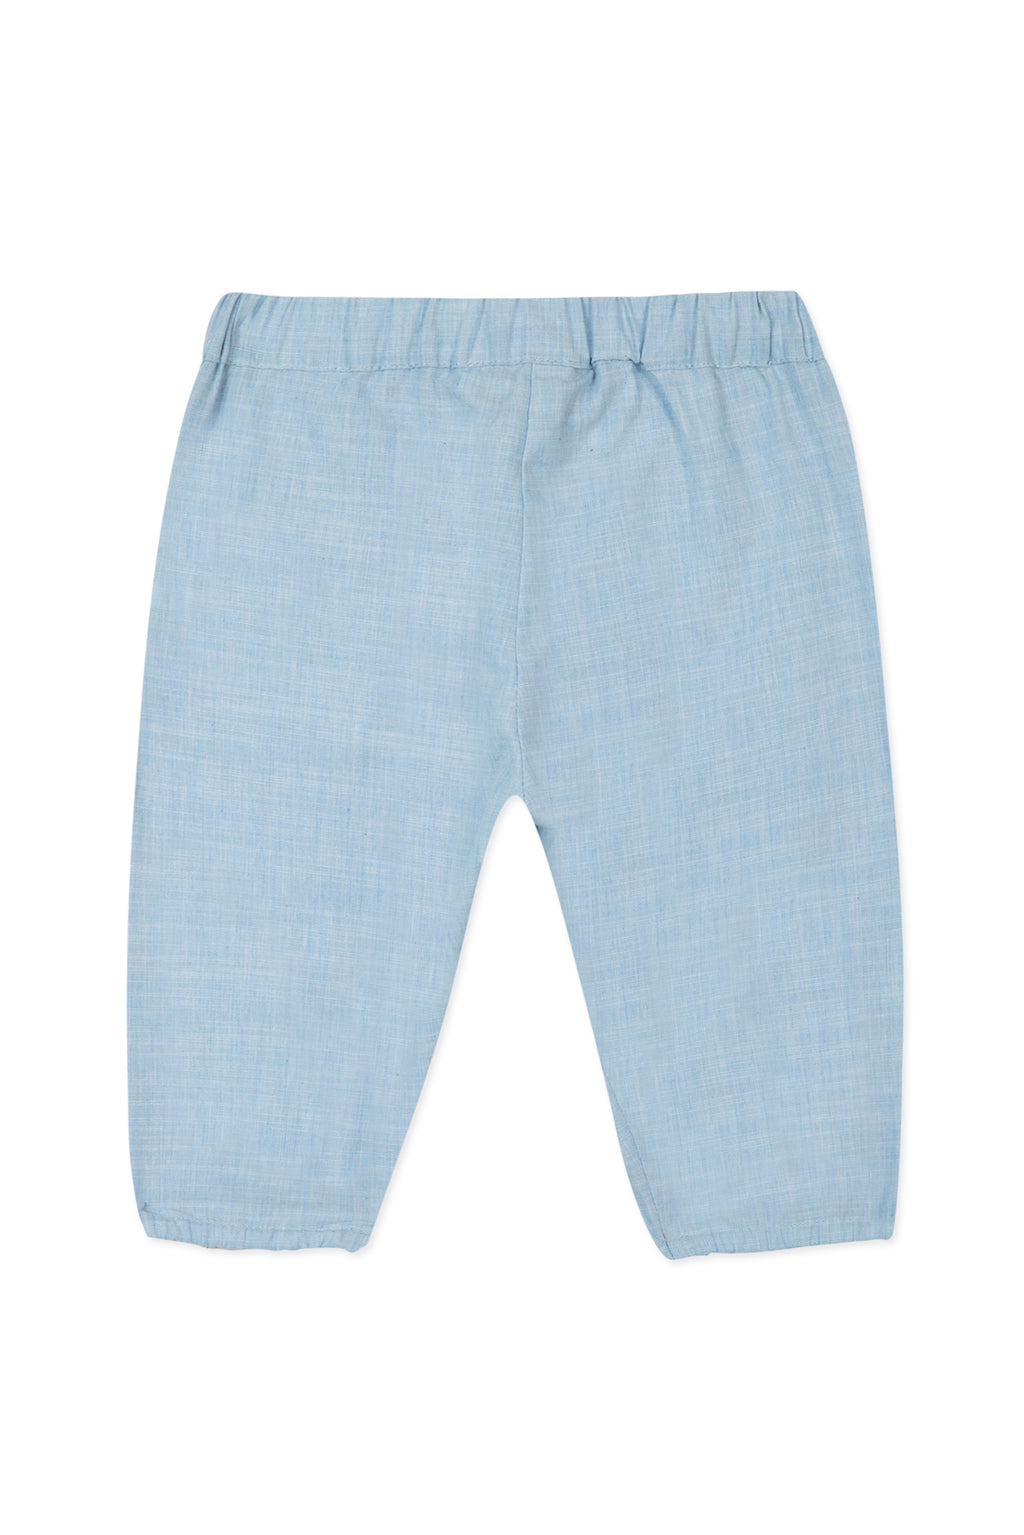 Pantalon - Azul cielo plisado